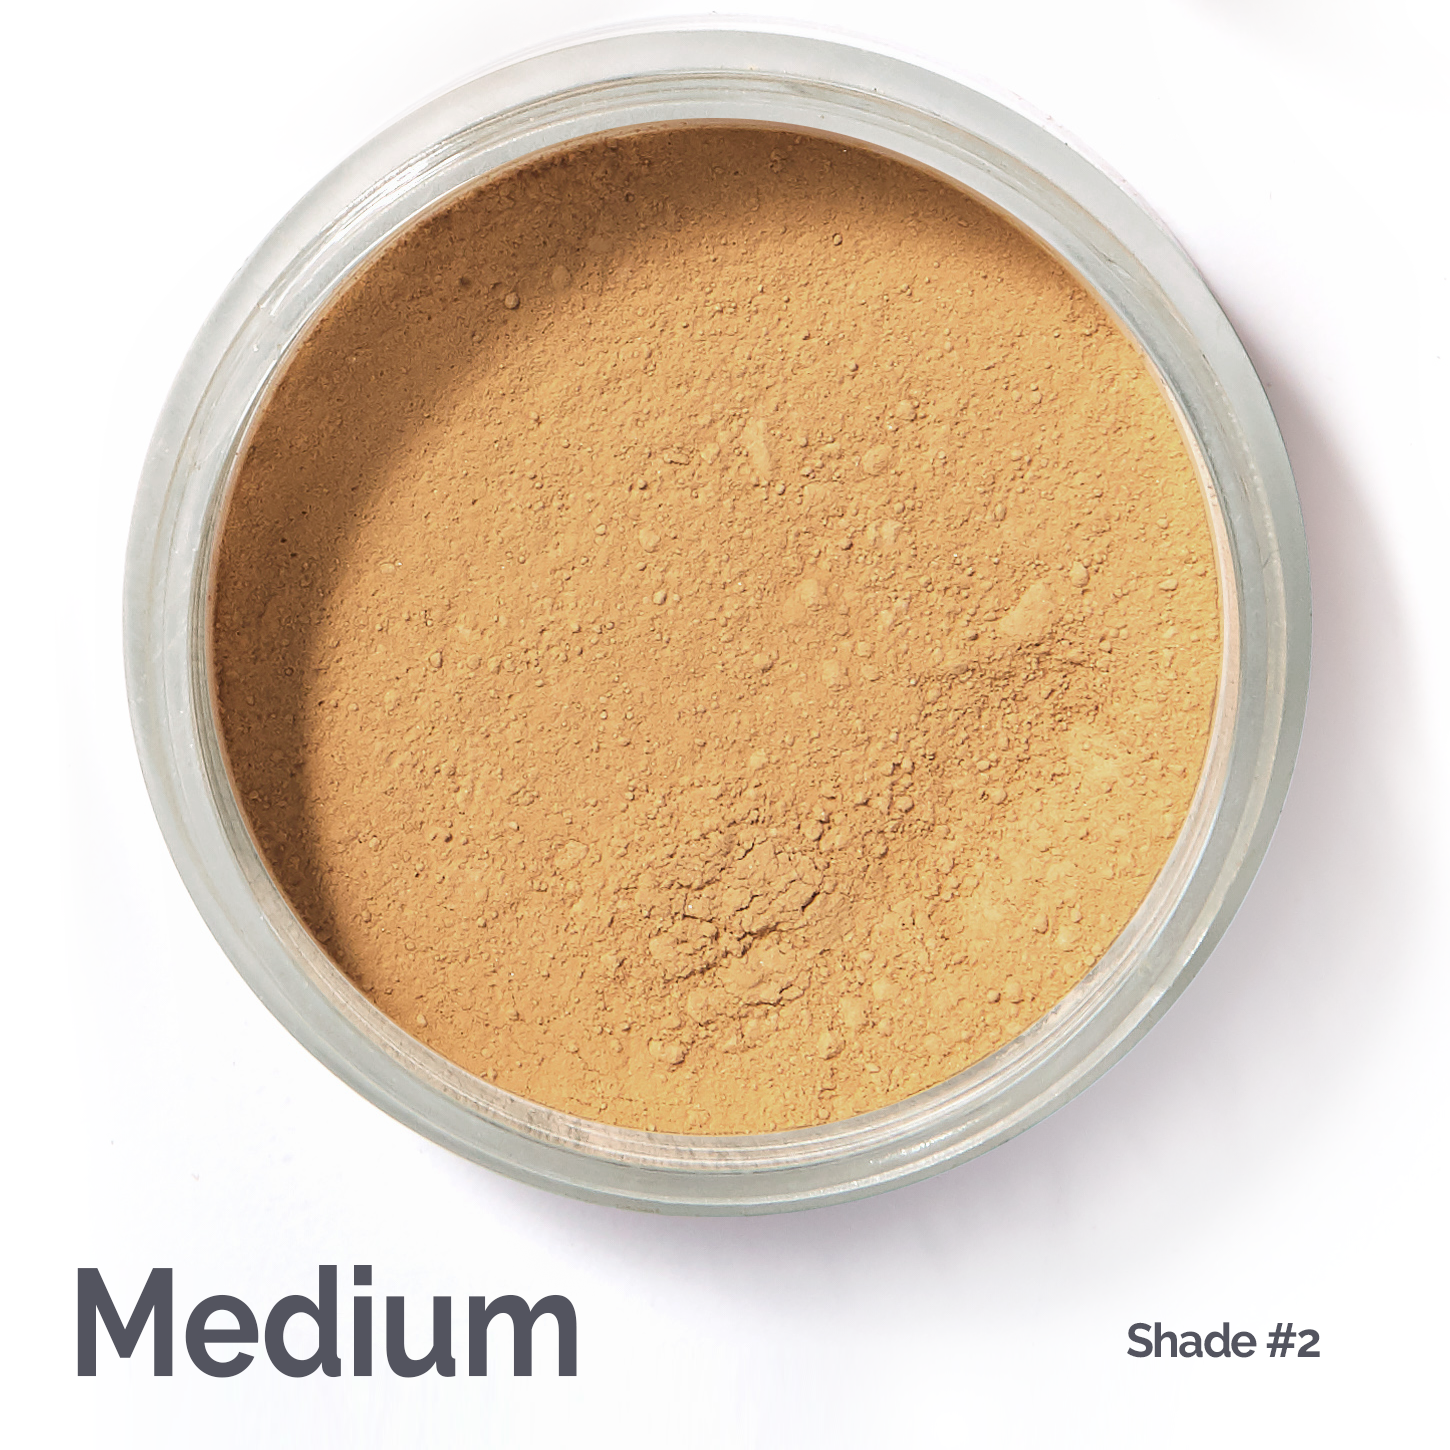 Works for almost all medium skin tones #medium